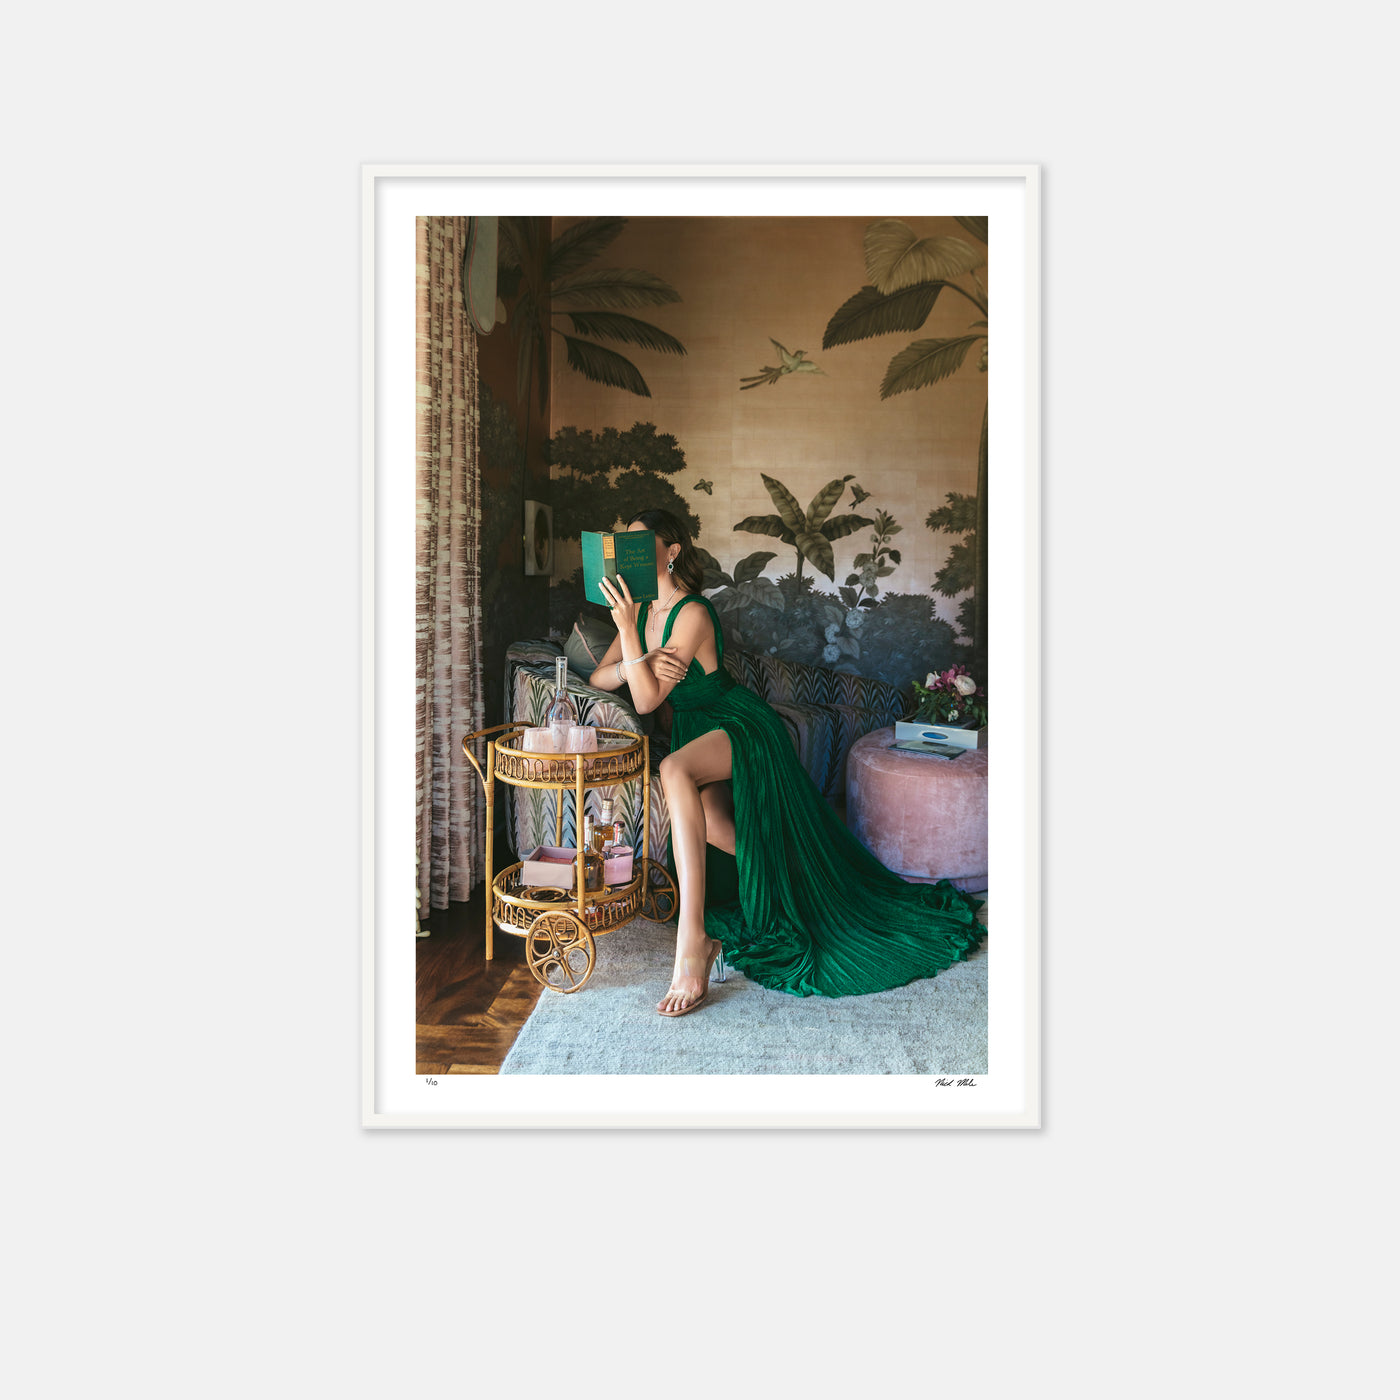 green dress, kept woman, palm tree wallpaper, green book, palm beach, newport, nick mele photography 